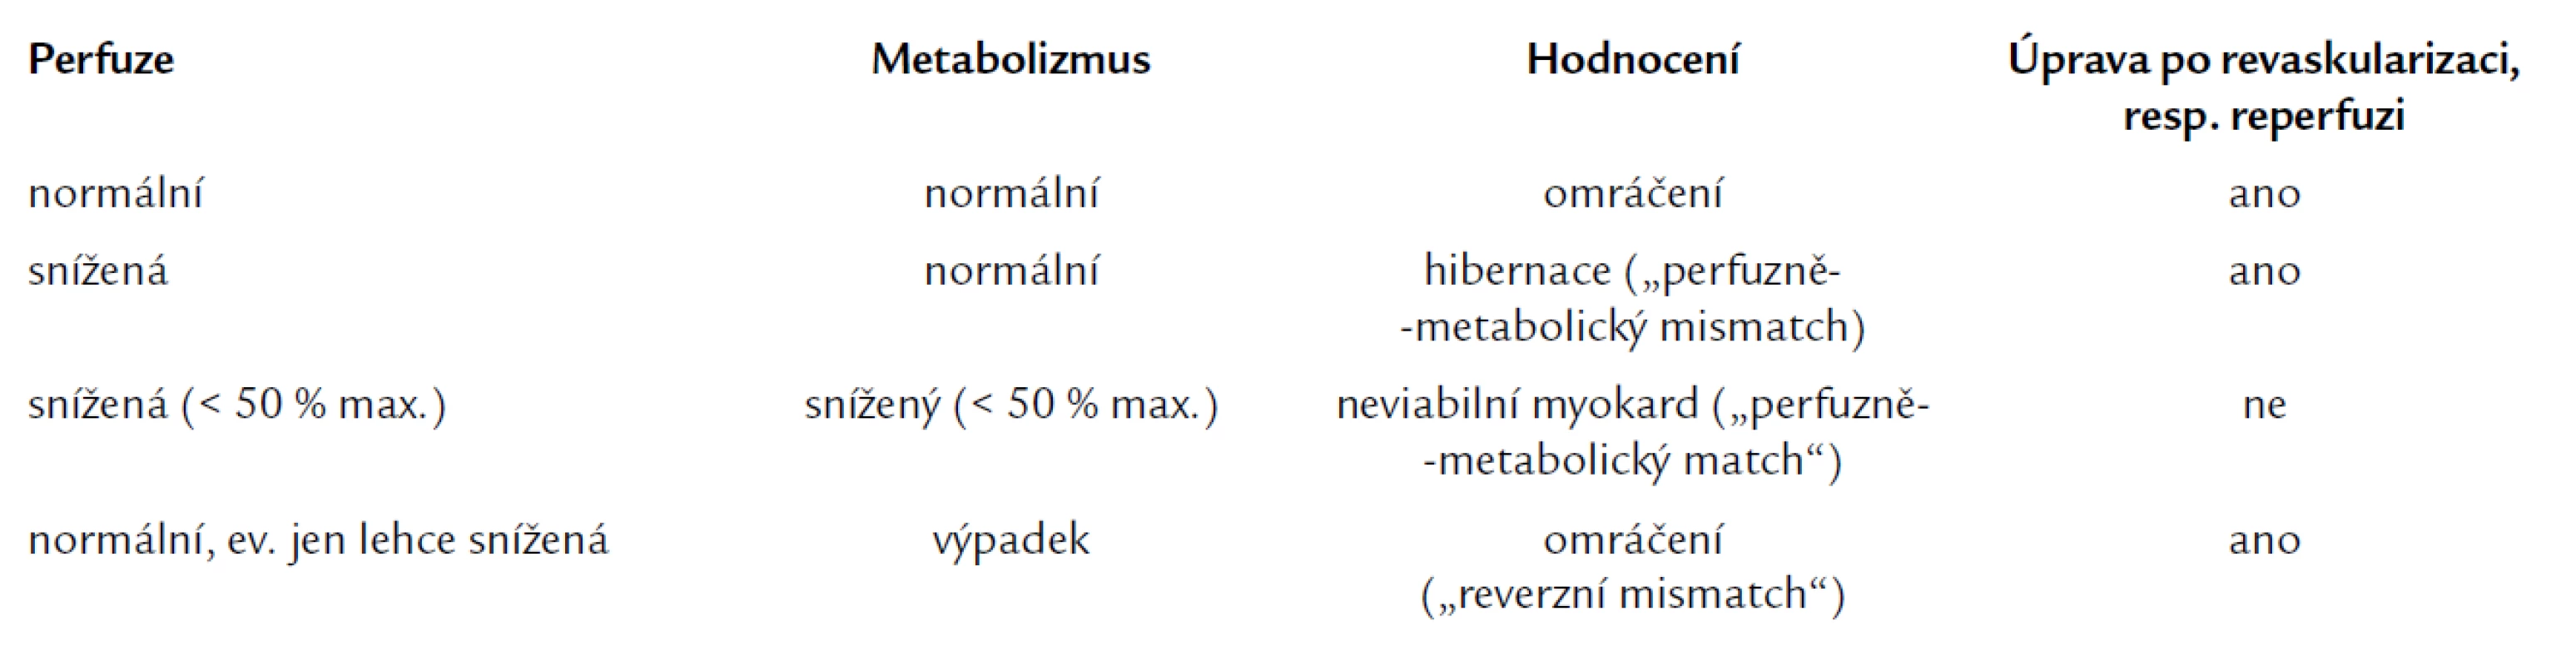 Hodnocení perfuze a metabolizmu glukózy v dysfunkčních segmentech levé komory [24].